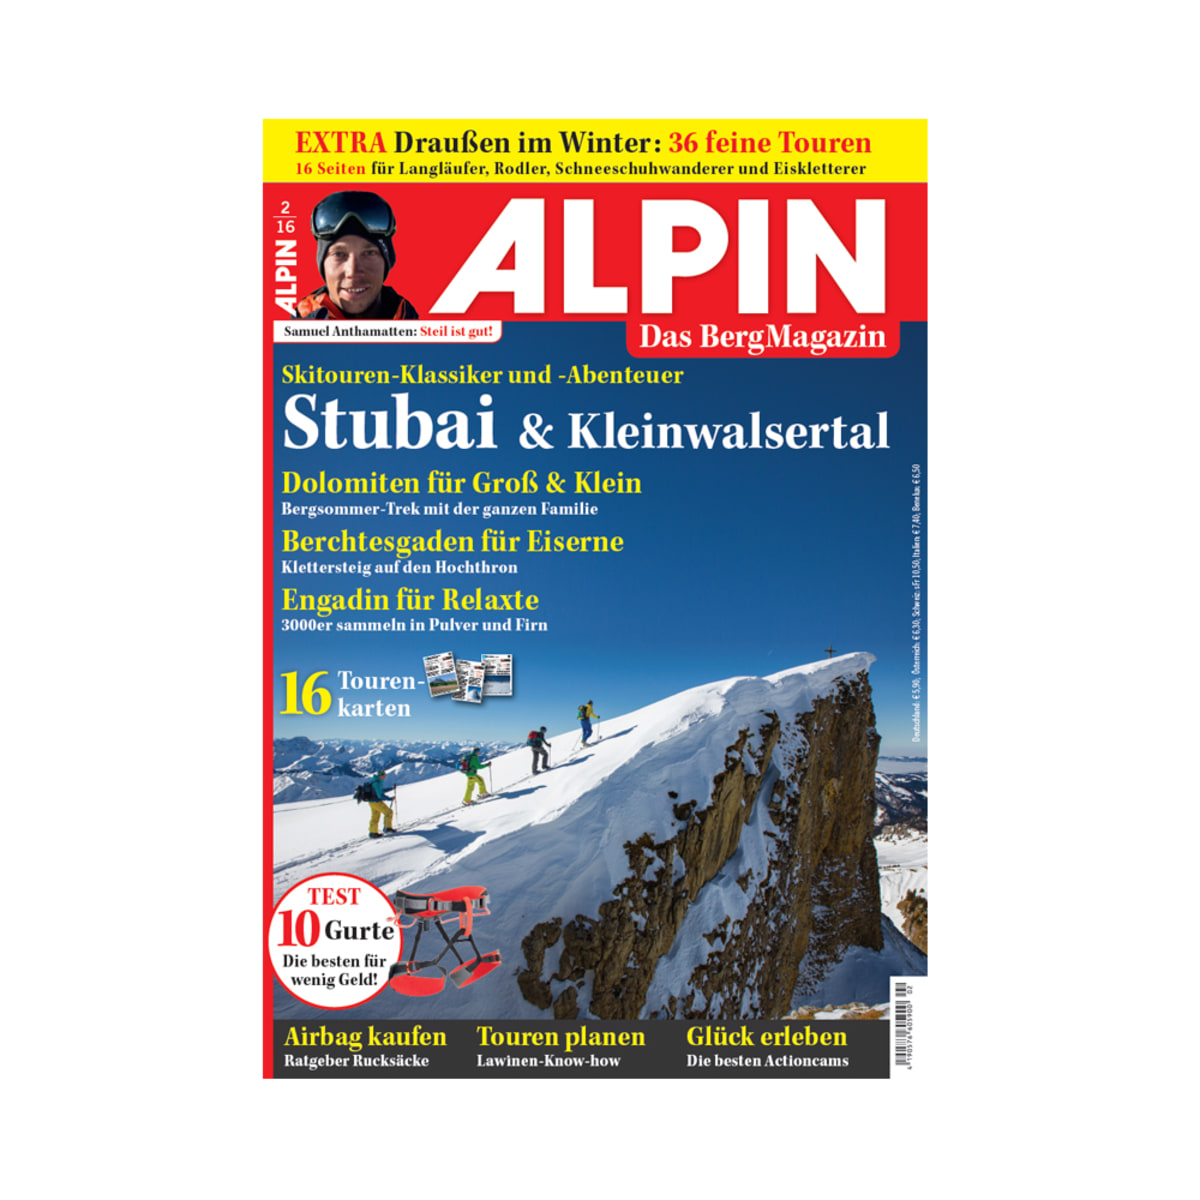 ALPIN 02/2016: Skitouren-Klassiker und -Abenteuer